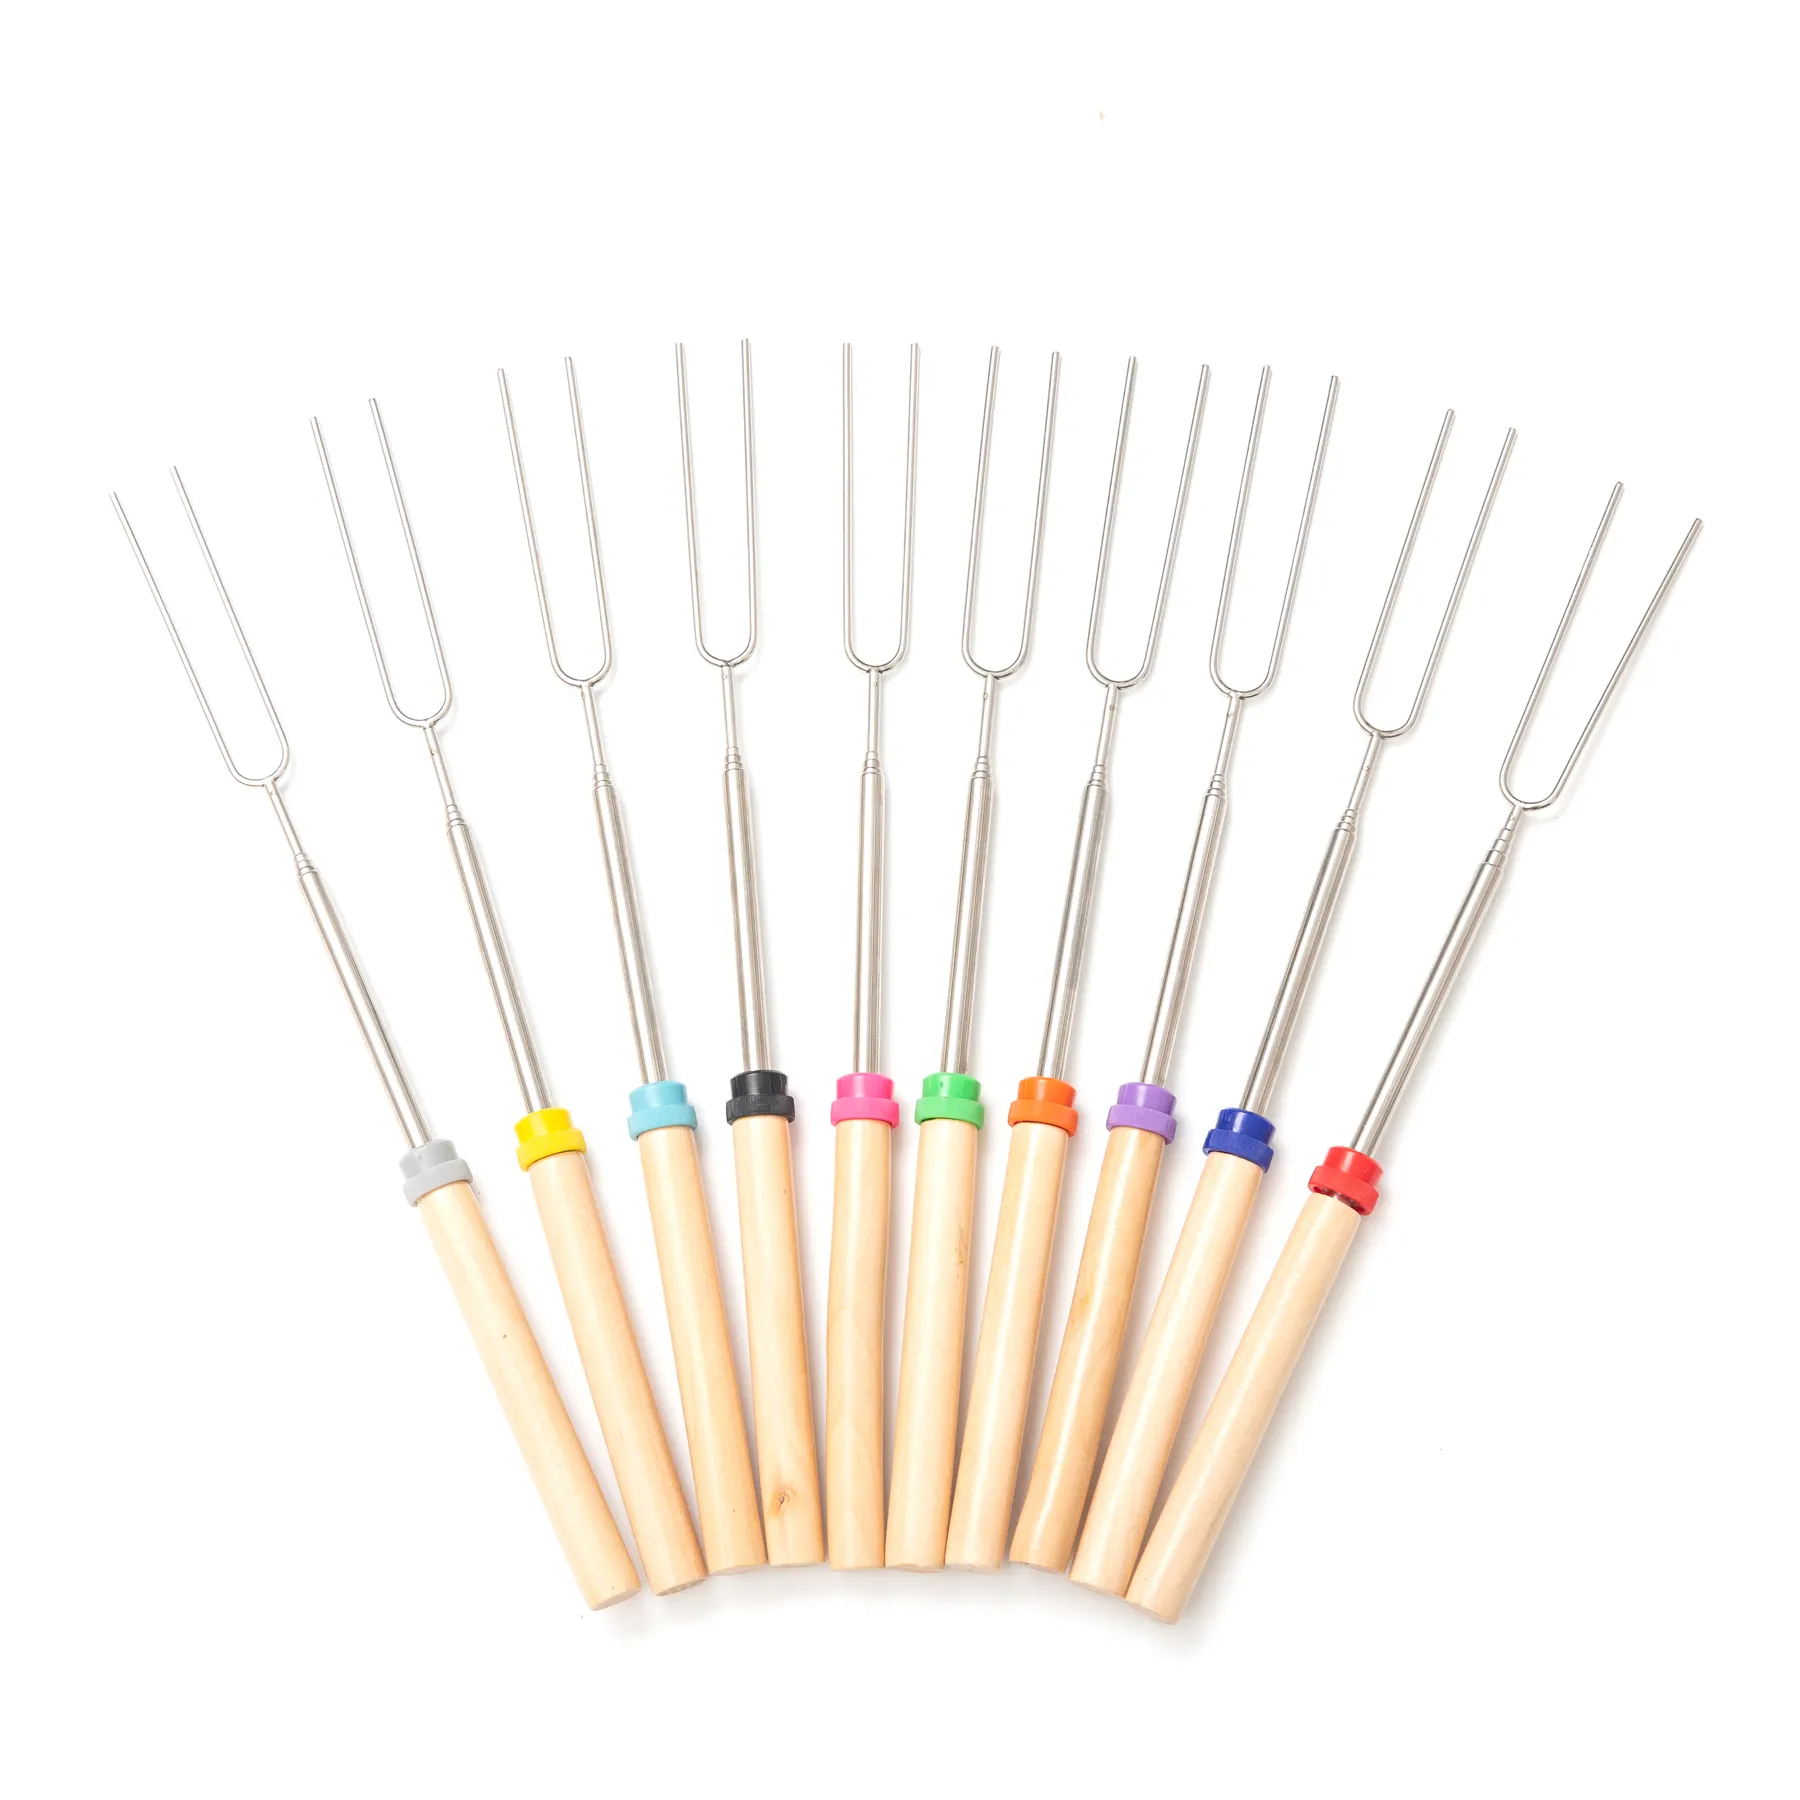 Профессиональная фабричная телескопическая вилка для барбекю, палочки для запекания зефира, палочки с деревянной ручкой от 31 до 81 см